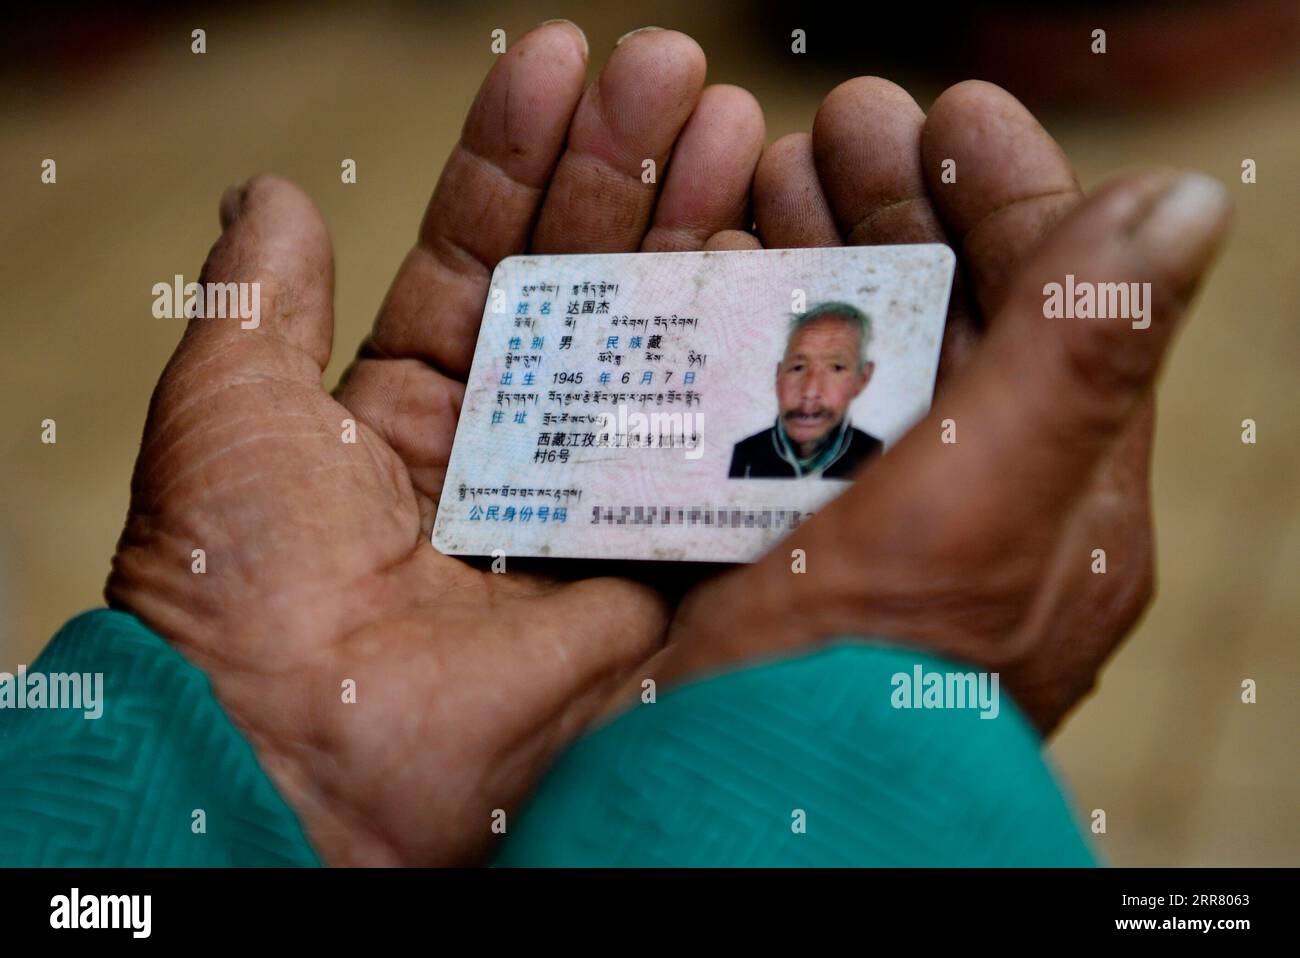 210410 -- LHASA, 10. April 2021 -- Foto vom 22. März 2021 zeigt den Personalausweis von Dawa Gokye. Dawa Gokye, 76, einst Leibeigene in einem lokalen Herrenhaus Tibets, hatte bis zur demokratischen Reform 1959 in Hoffnungslosigkeit und Verzweiflung gelebt. In den Augen der Sklavenhalter sind Sklaven nichts anderes als sprechende Werkzeuge, die ihnen ausgeliefert sind. Dawa erinnerte sich, dass sein Kopf vom Verwalter des Herrenhauses schwer verletzt wurde, da der damals 8-Jährige das Wasser nicht heiß kochte, während er den Tee braute. Zusammen mit Zehntausenden anderer Sklaven nahm Dawa 1959 ein ganz neues Leben auf, als seine Familie etwa drei Hektar Land und einige davon sicherte Stockfoto